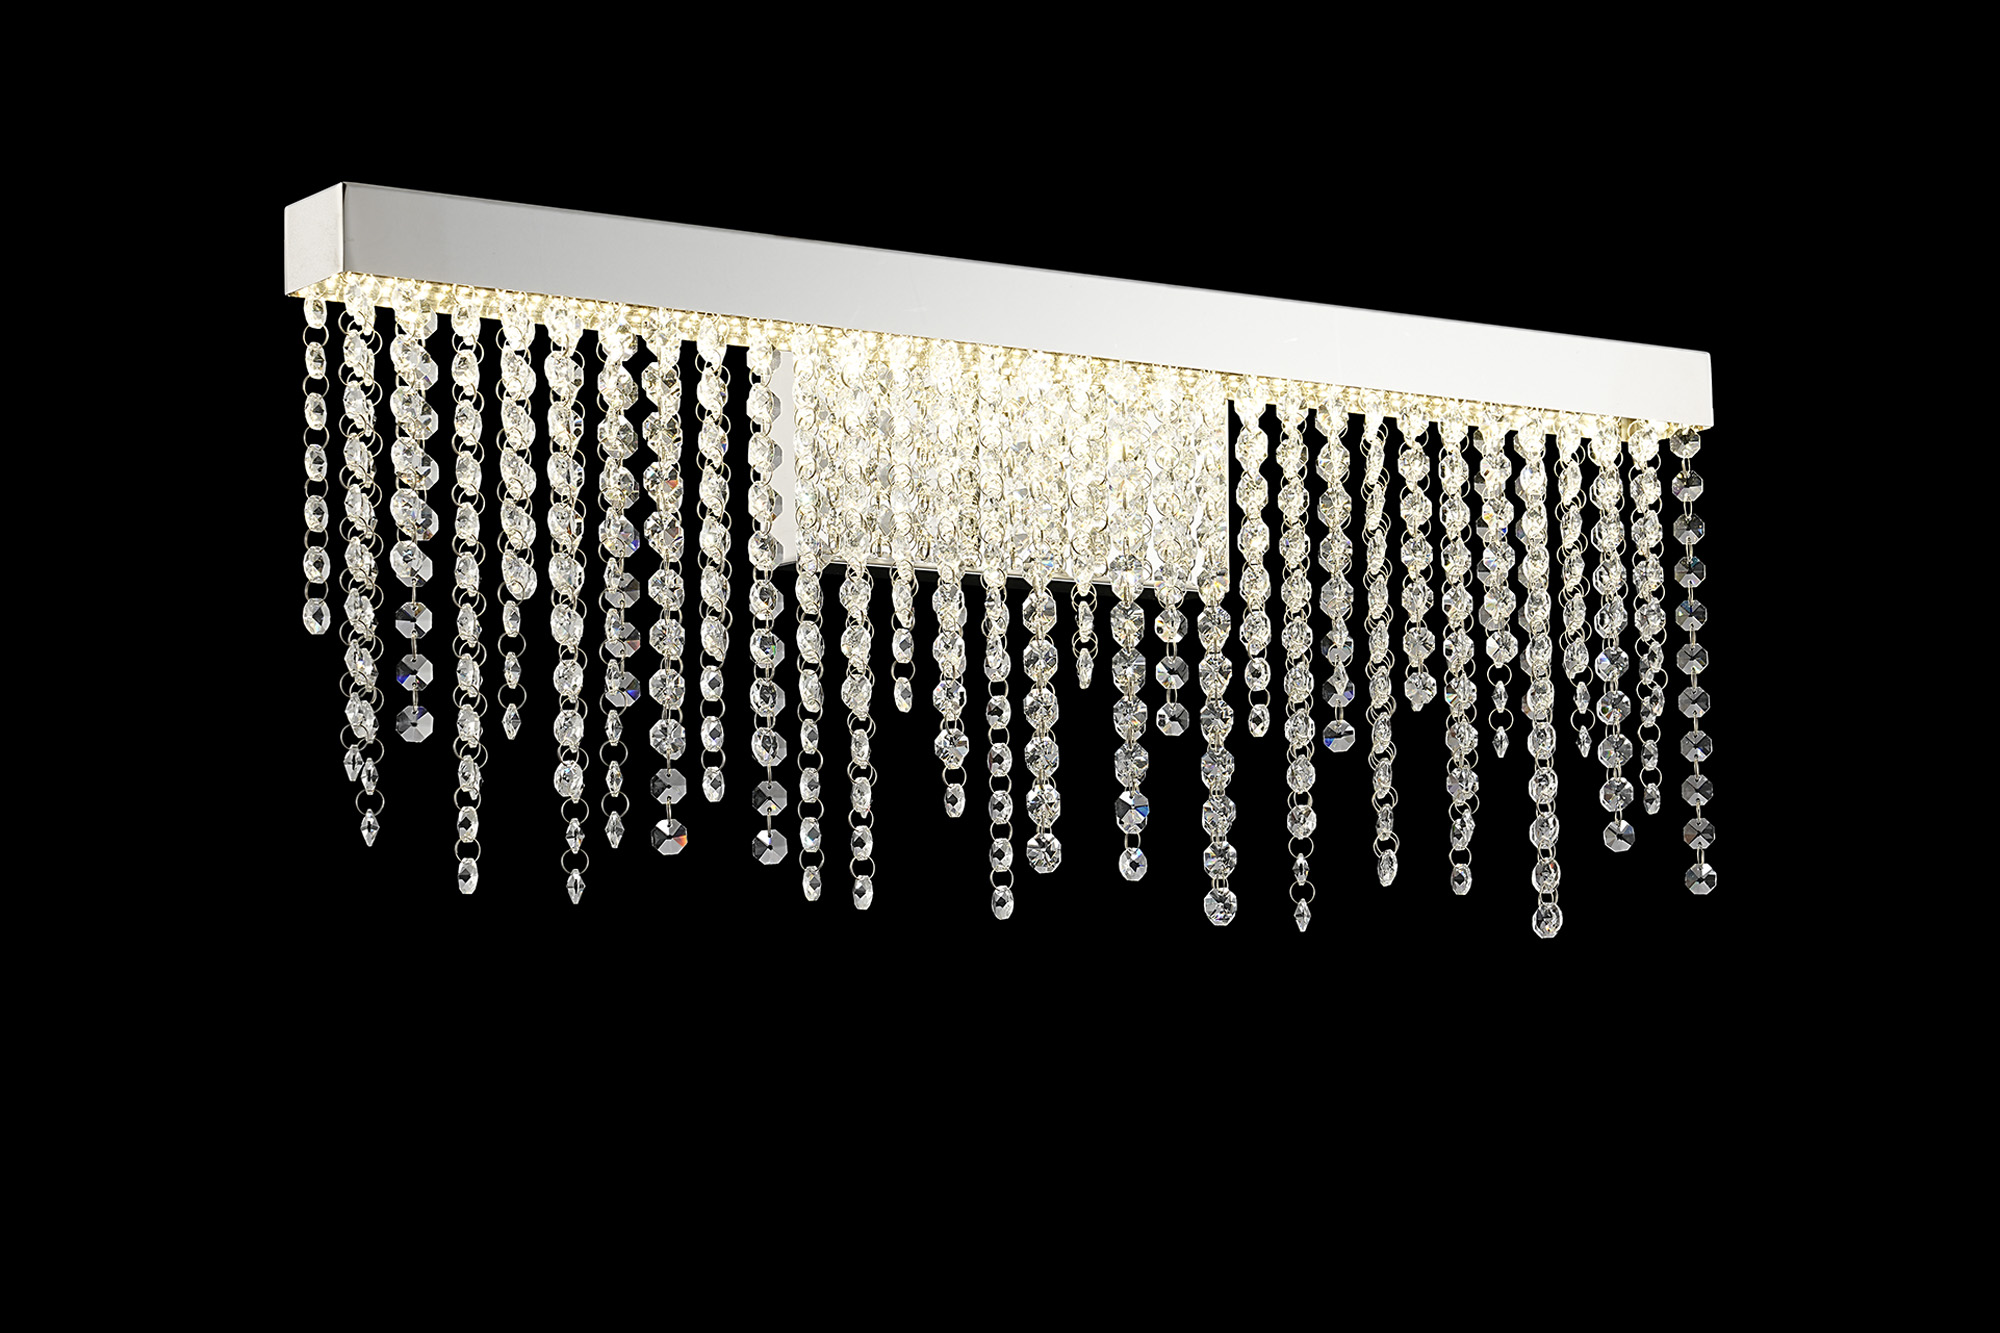 Bano Polished Chrome Crystal Wall Lights Diyas Flush Crystal Wall Lights